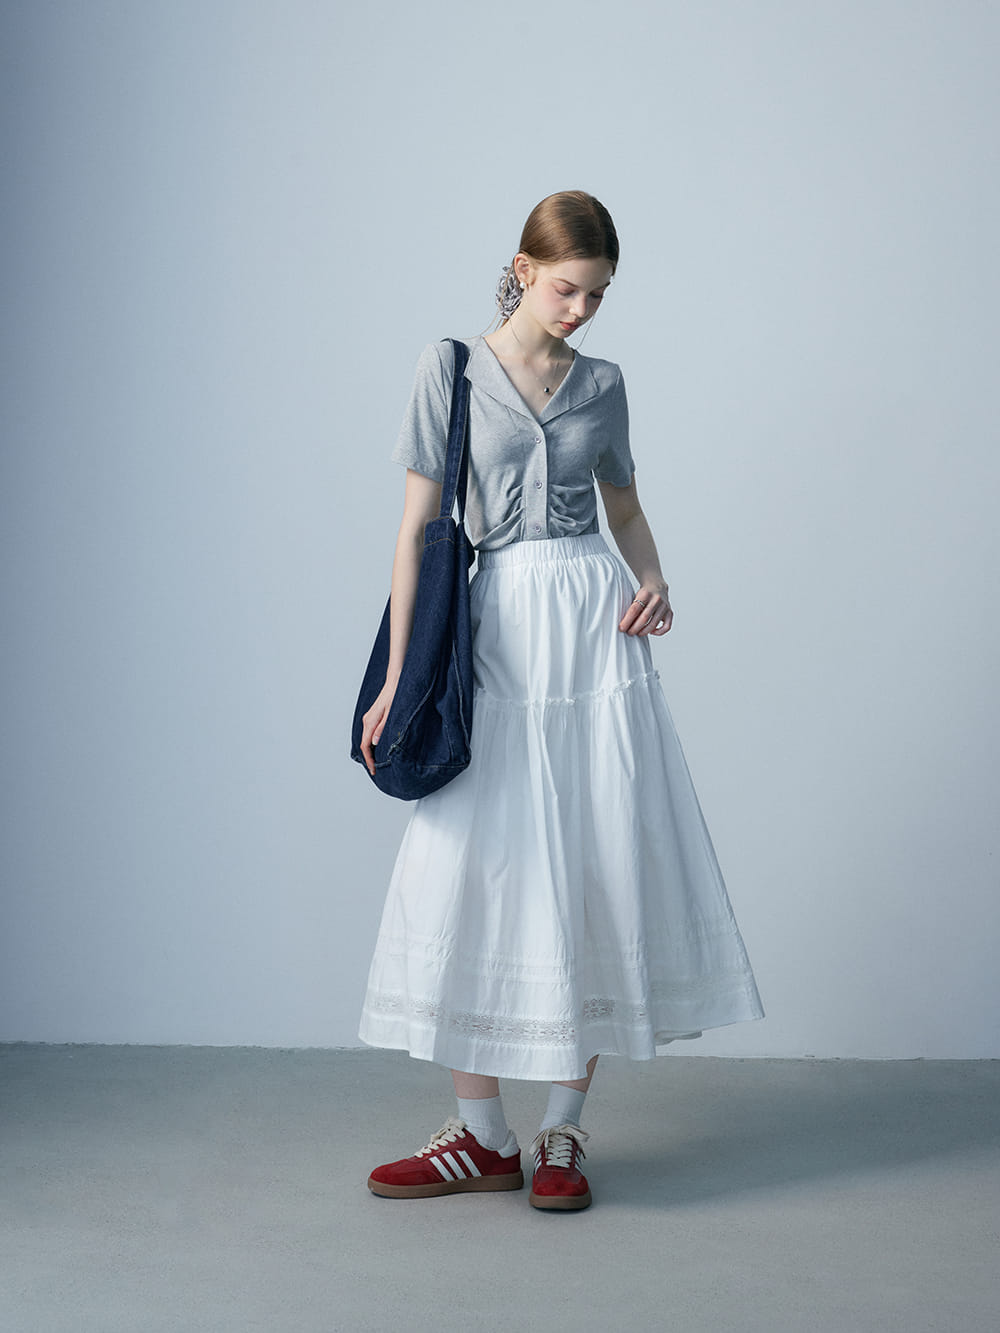 Skirt Midi Cotton White Lace - Pakaian Kasual Musim Panas